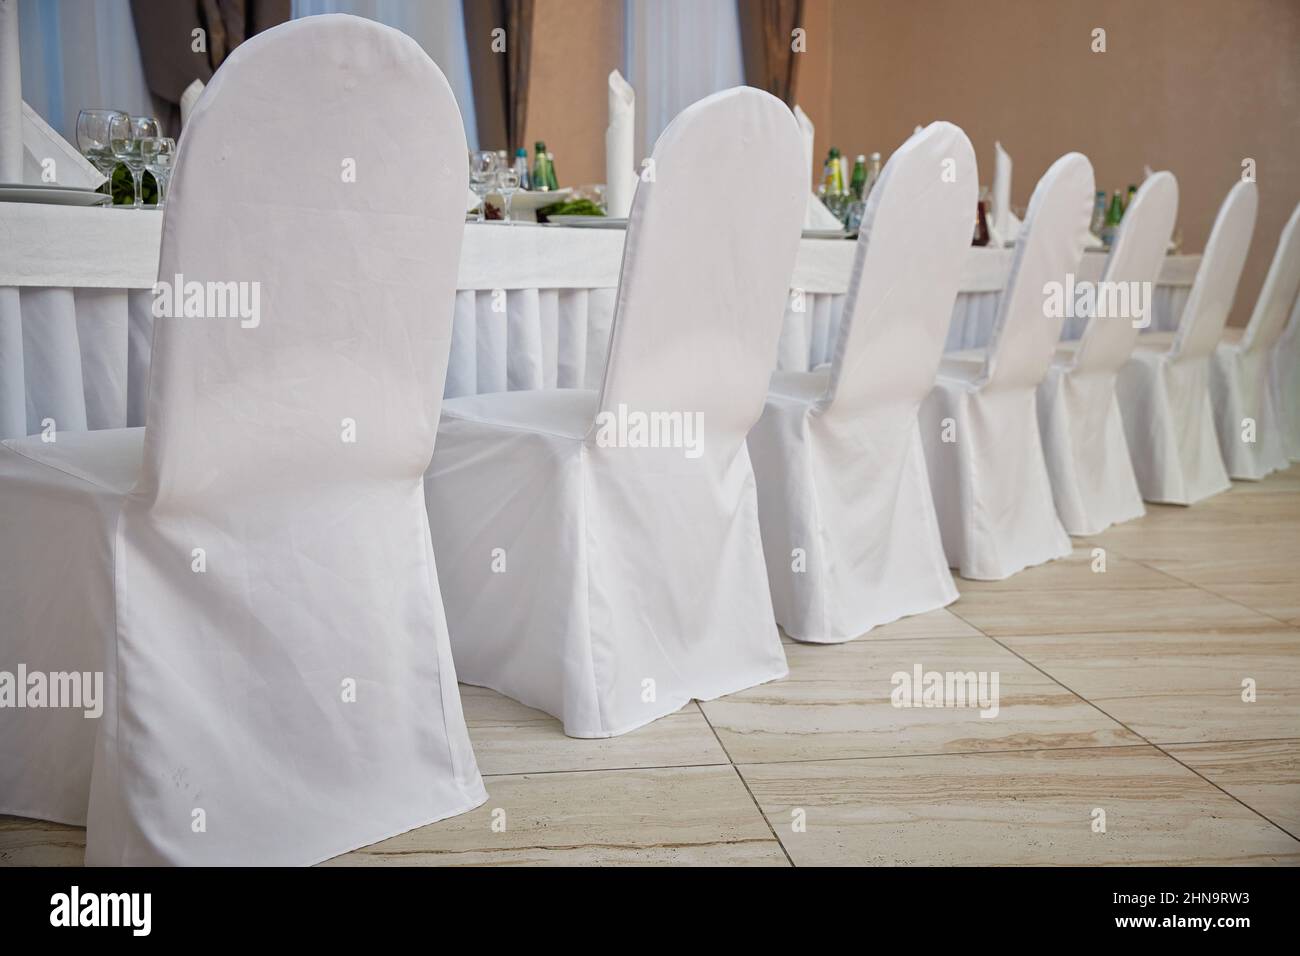 Sedie in coperte bianche in un ristorante vicino ad un tavolo set. Matrimonio Foto Stock